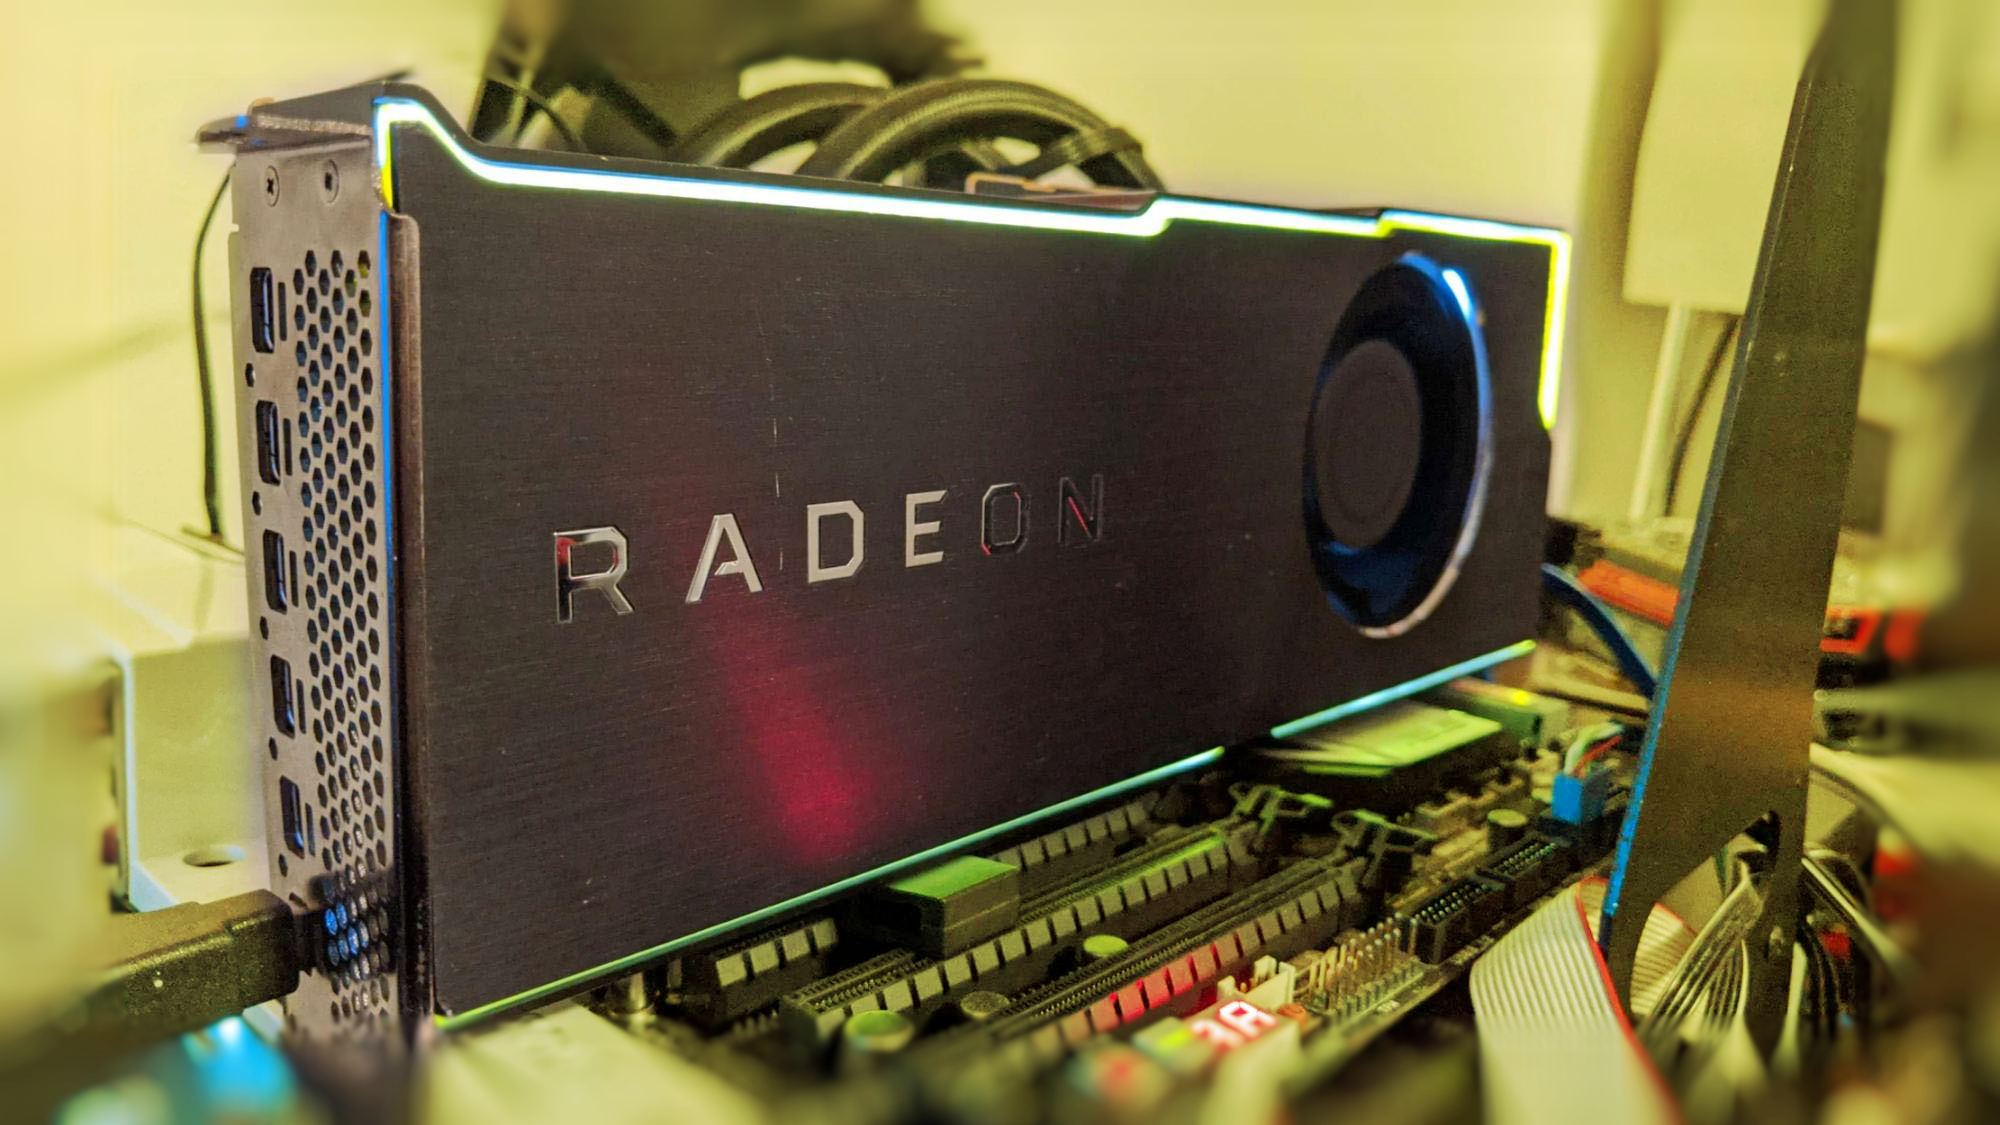 det er alt klassisk få øje på Never released AMD Radeon Pro prototype with full Vega 20 GPU spotted -  VideoCardz.com